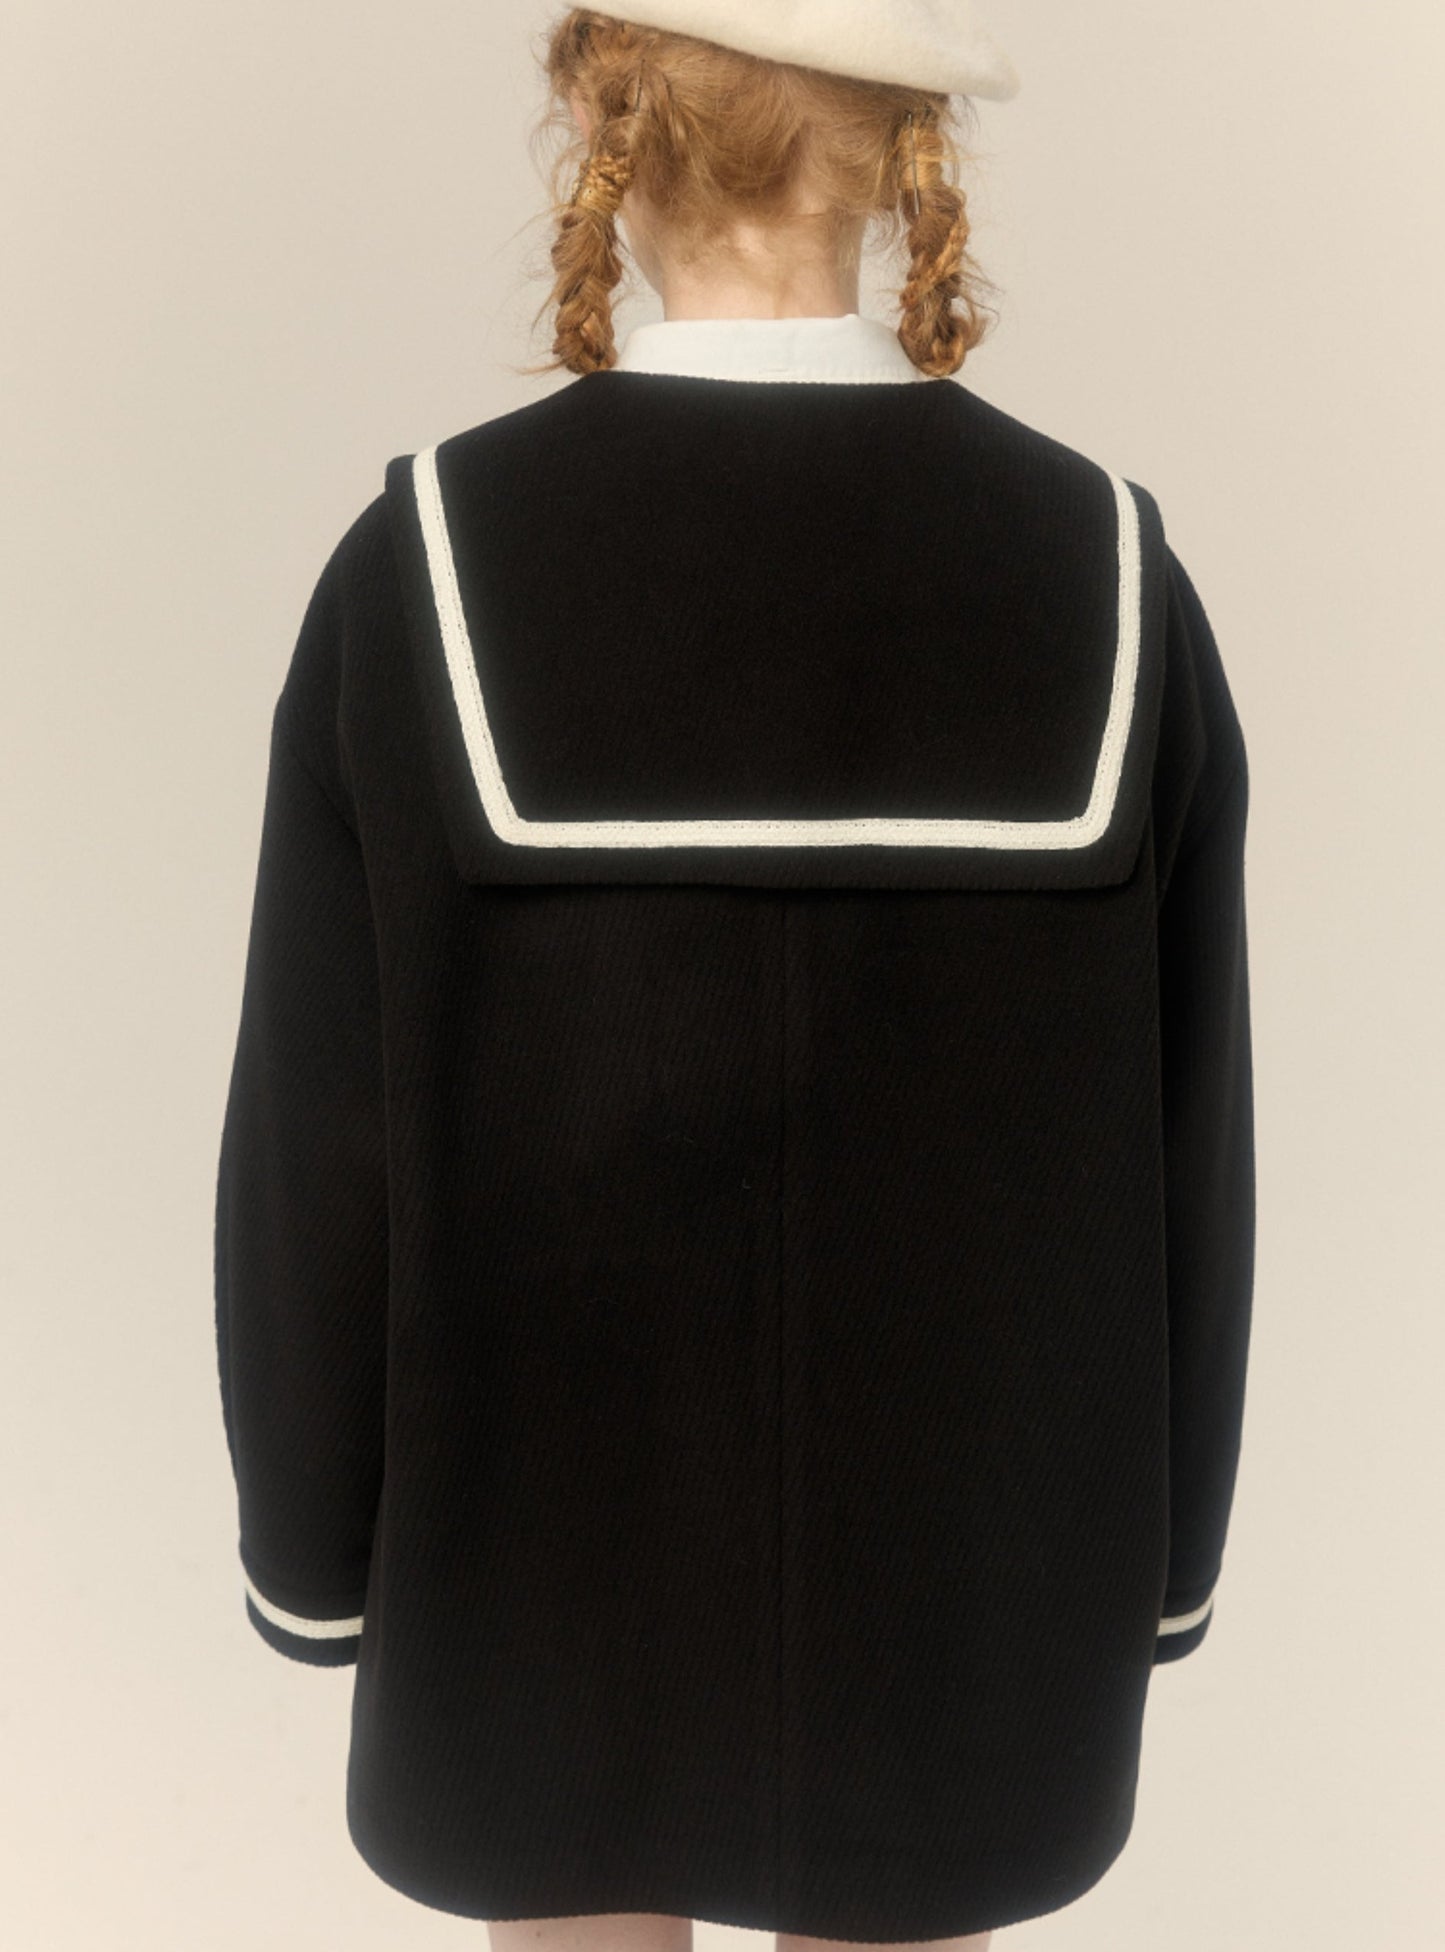 Navy collar tweed mid-length tweed jacket